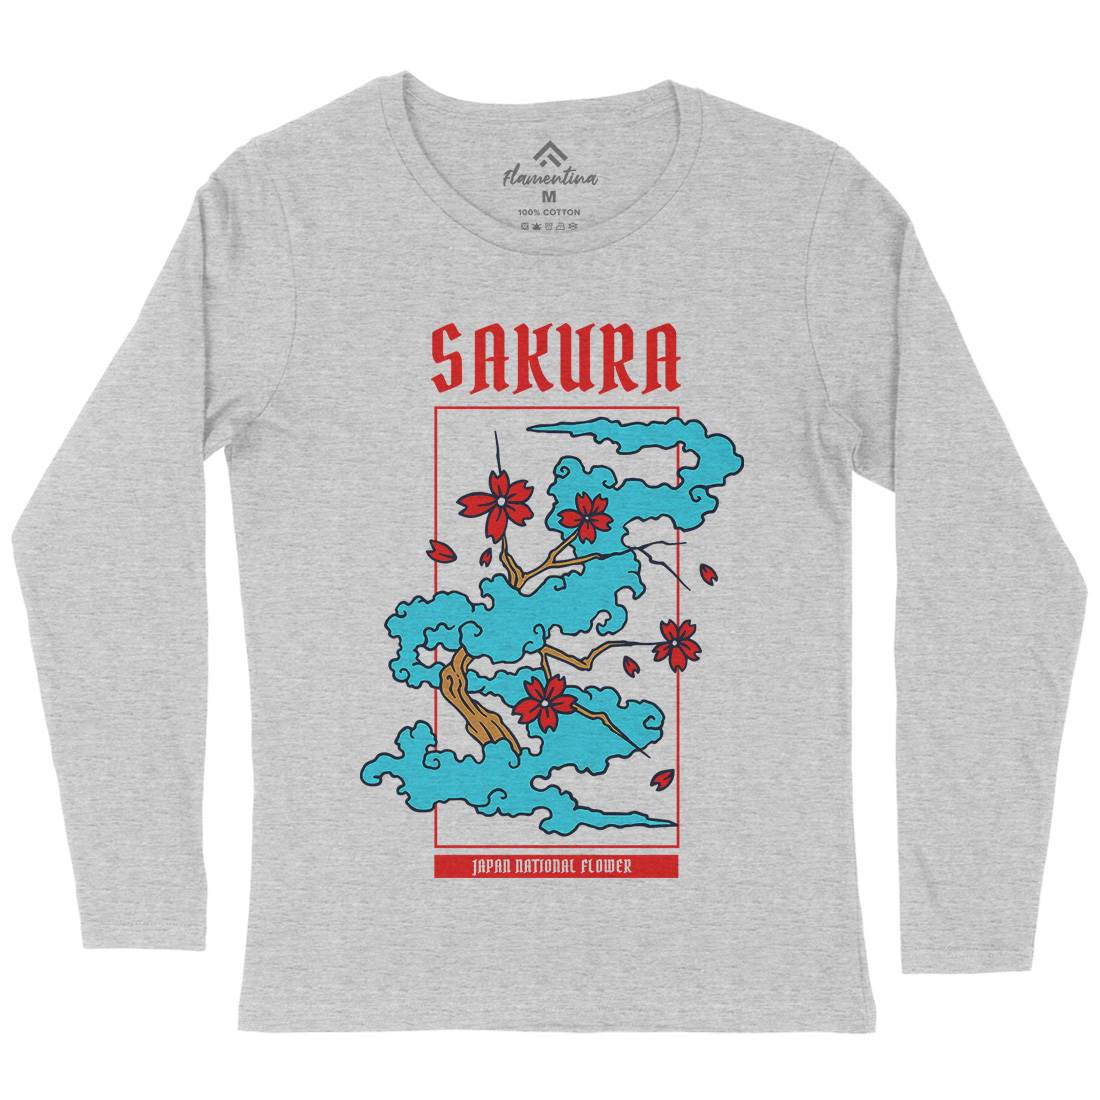 Sakura Womens Long Sleeve T-Shirt Asian C766